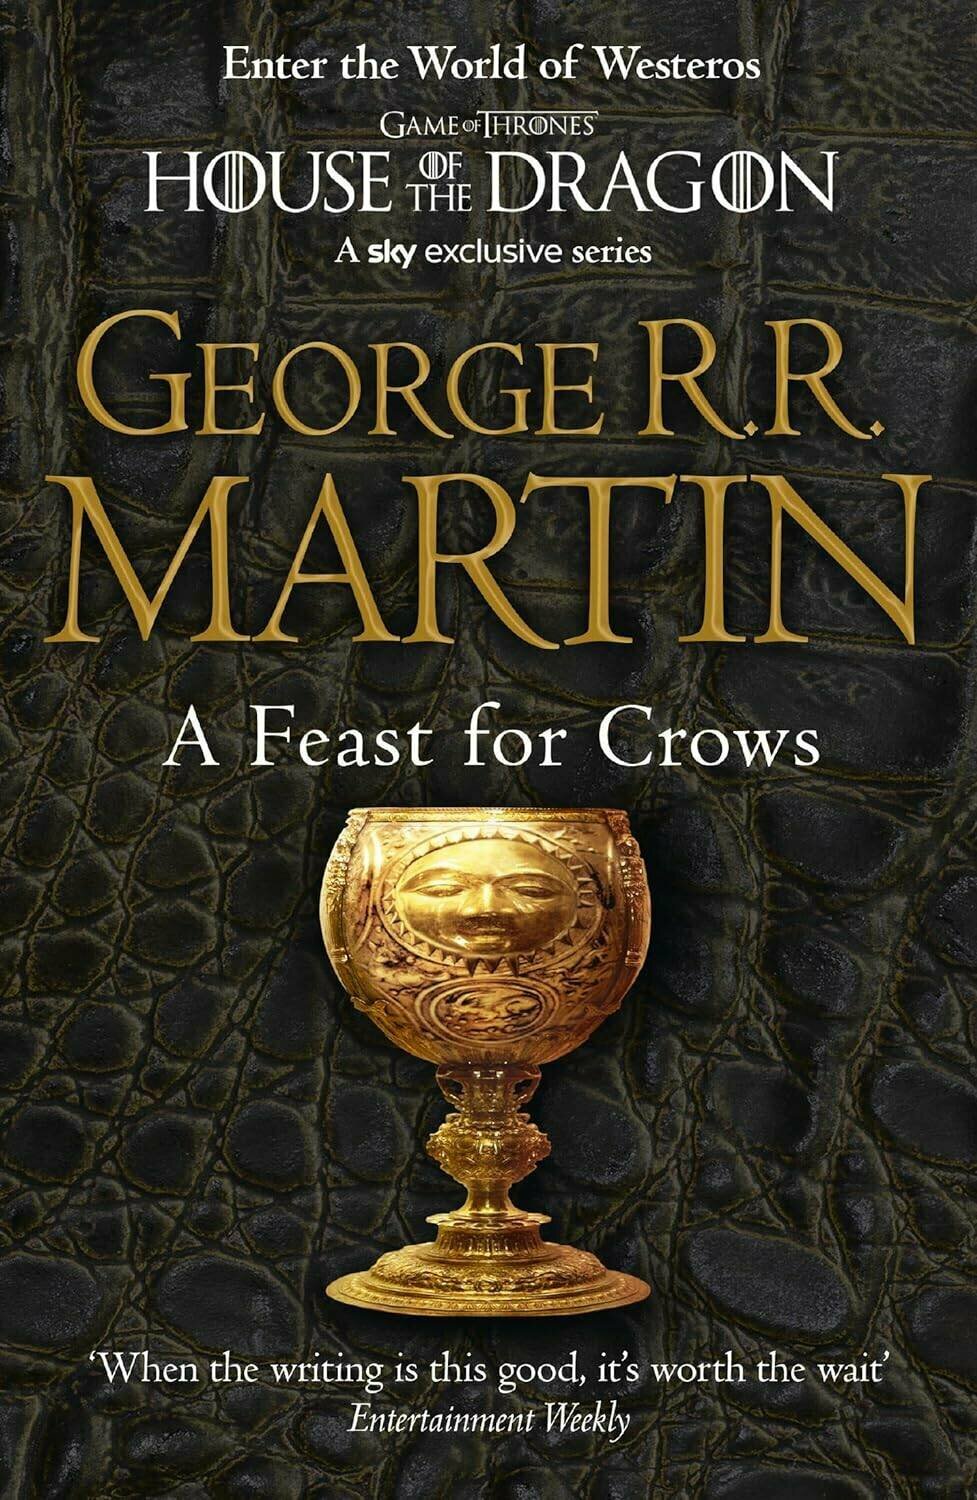 George R.R. Martin. A feast for crows (George R. R. Martin) Пир Стервятников (Джордж Р. Р Мартин) /Книги на английском языке